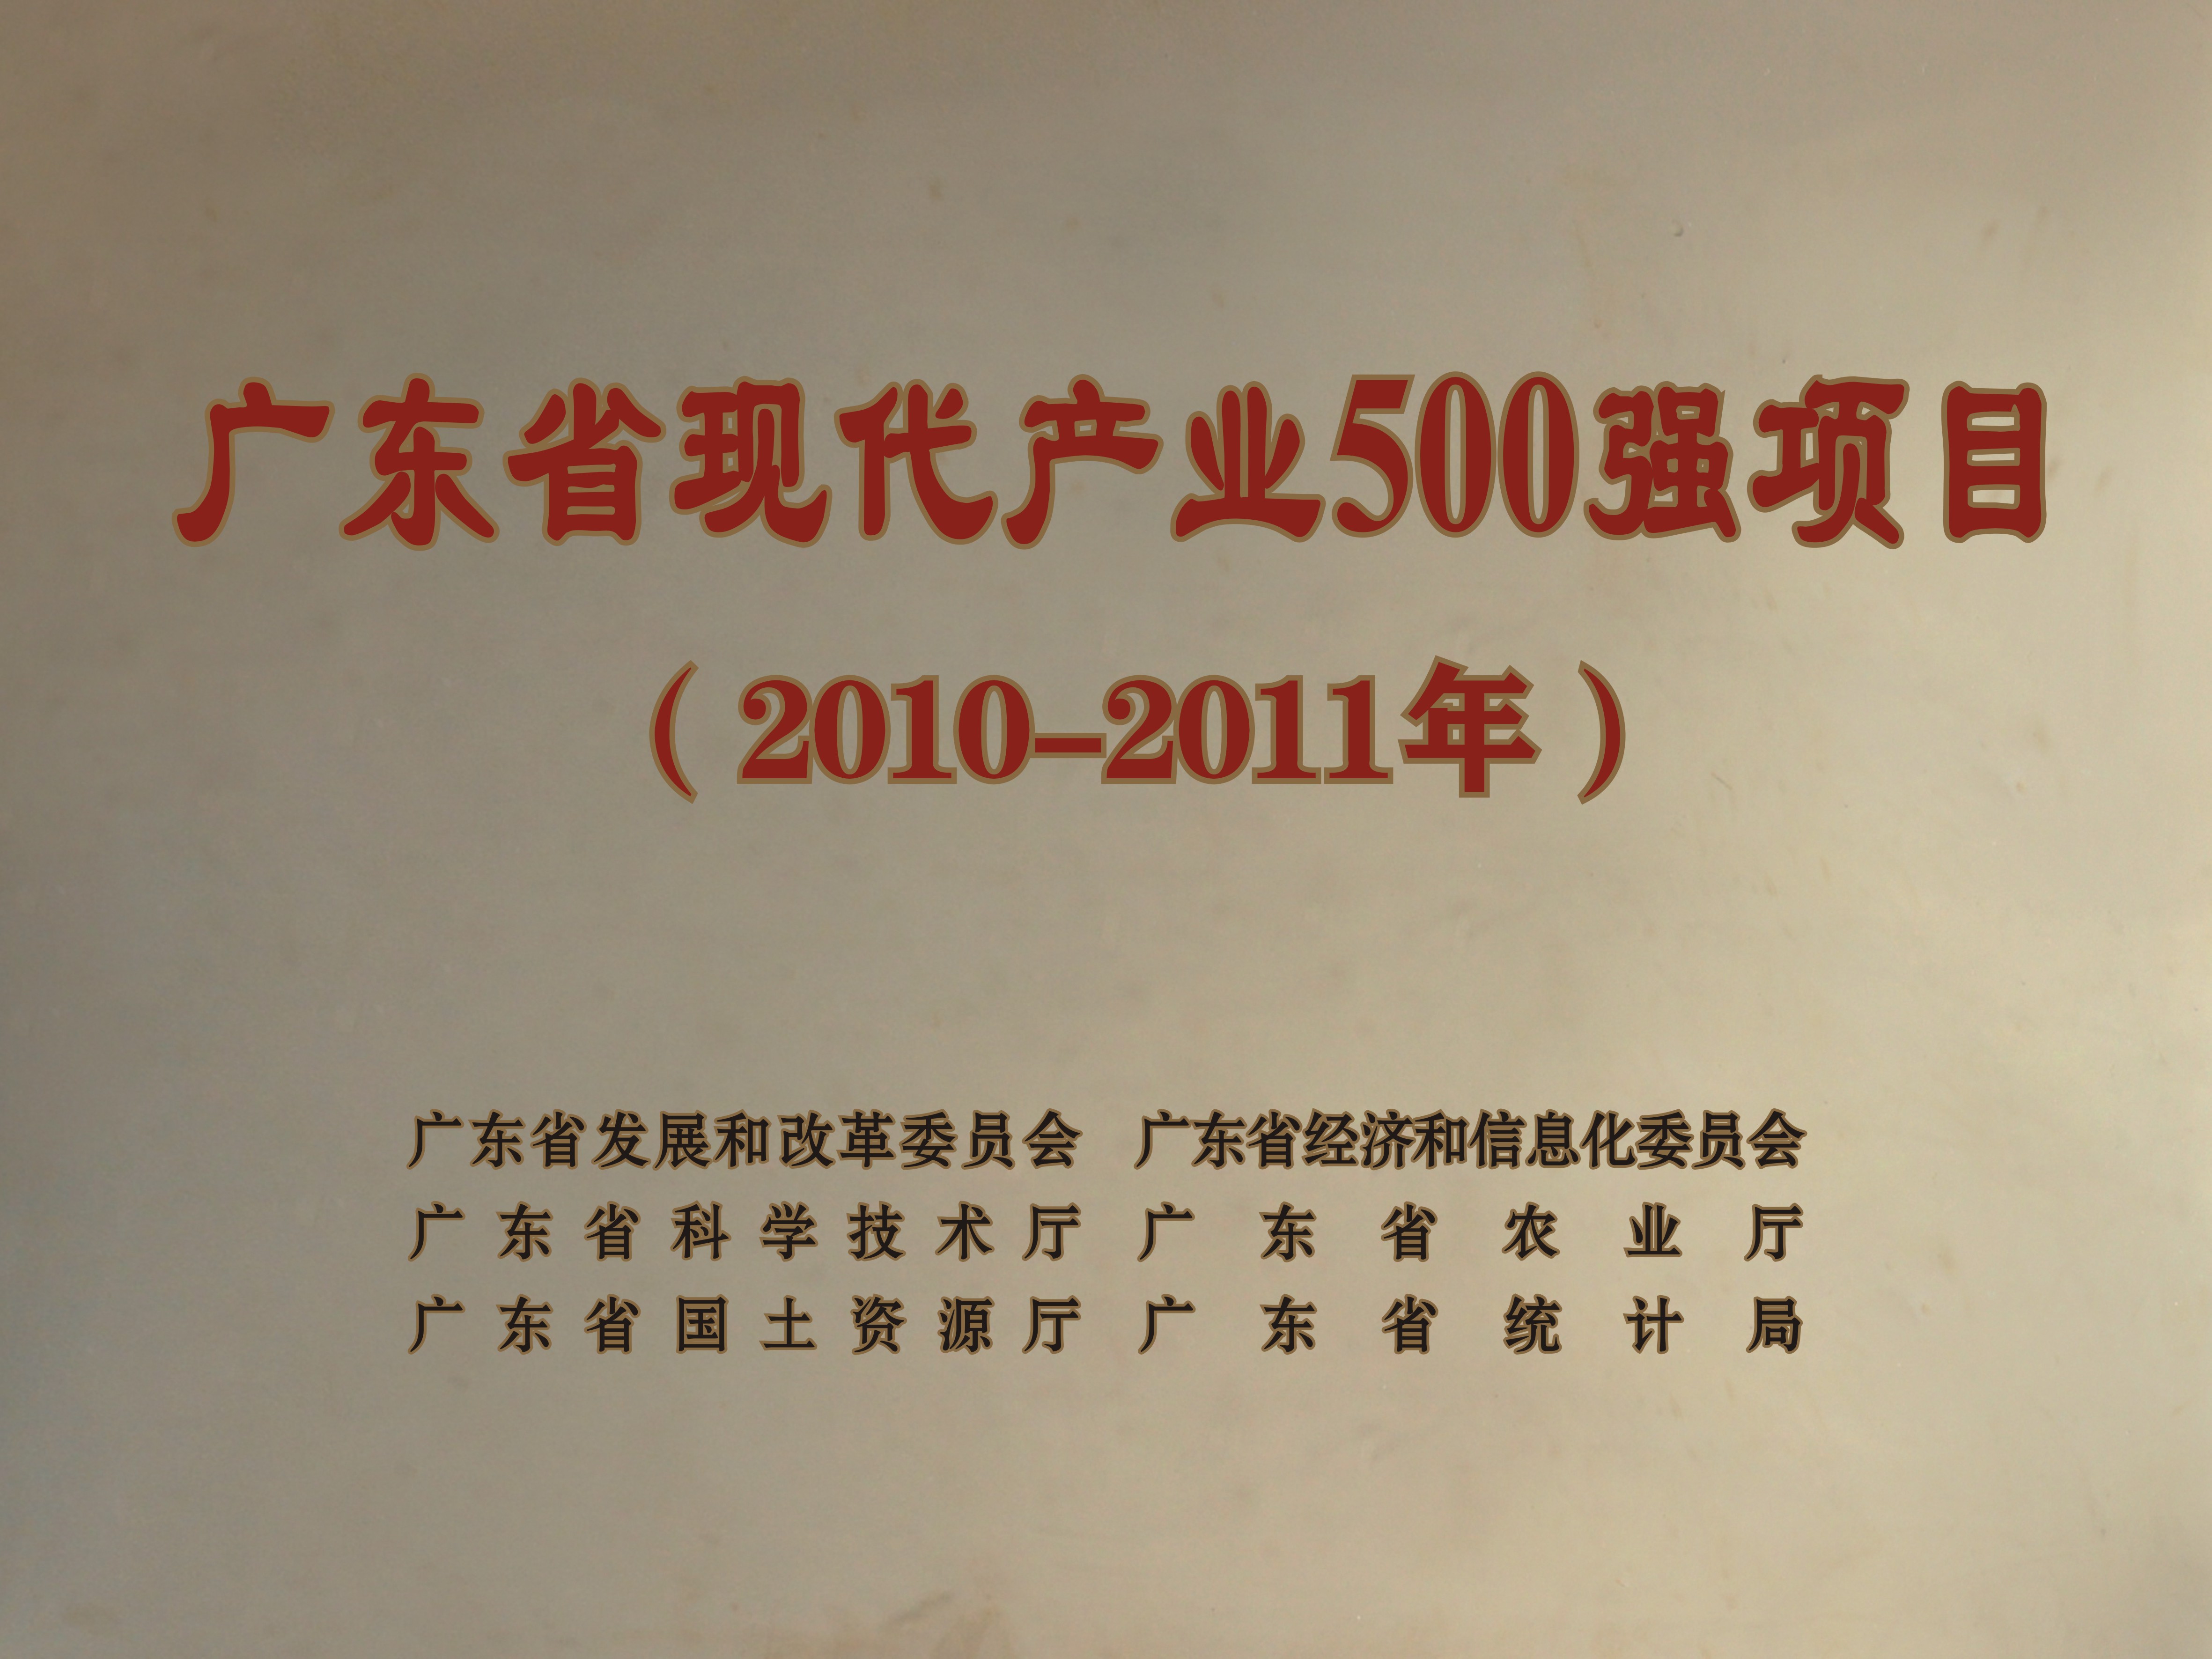 廣東省現代產業500強項目-2010-2011年